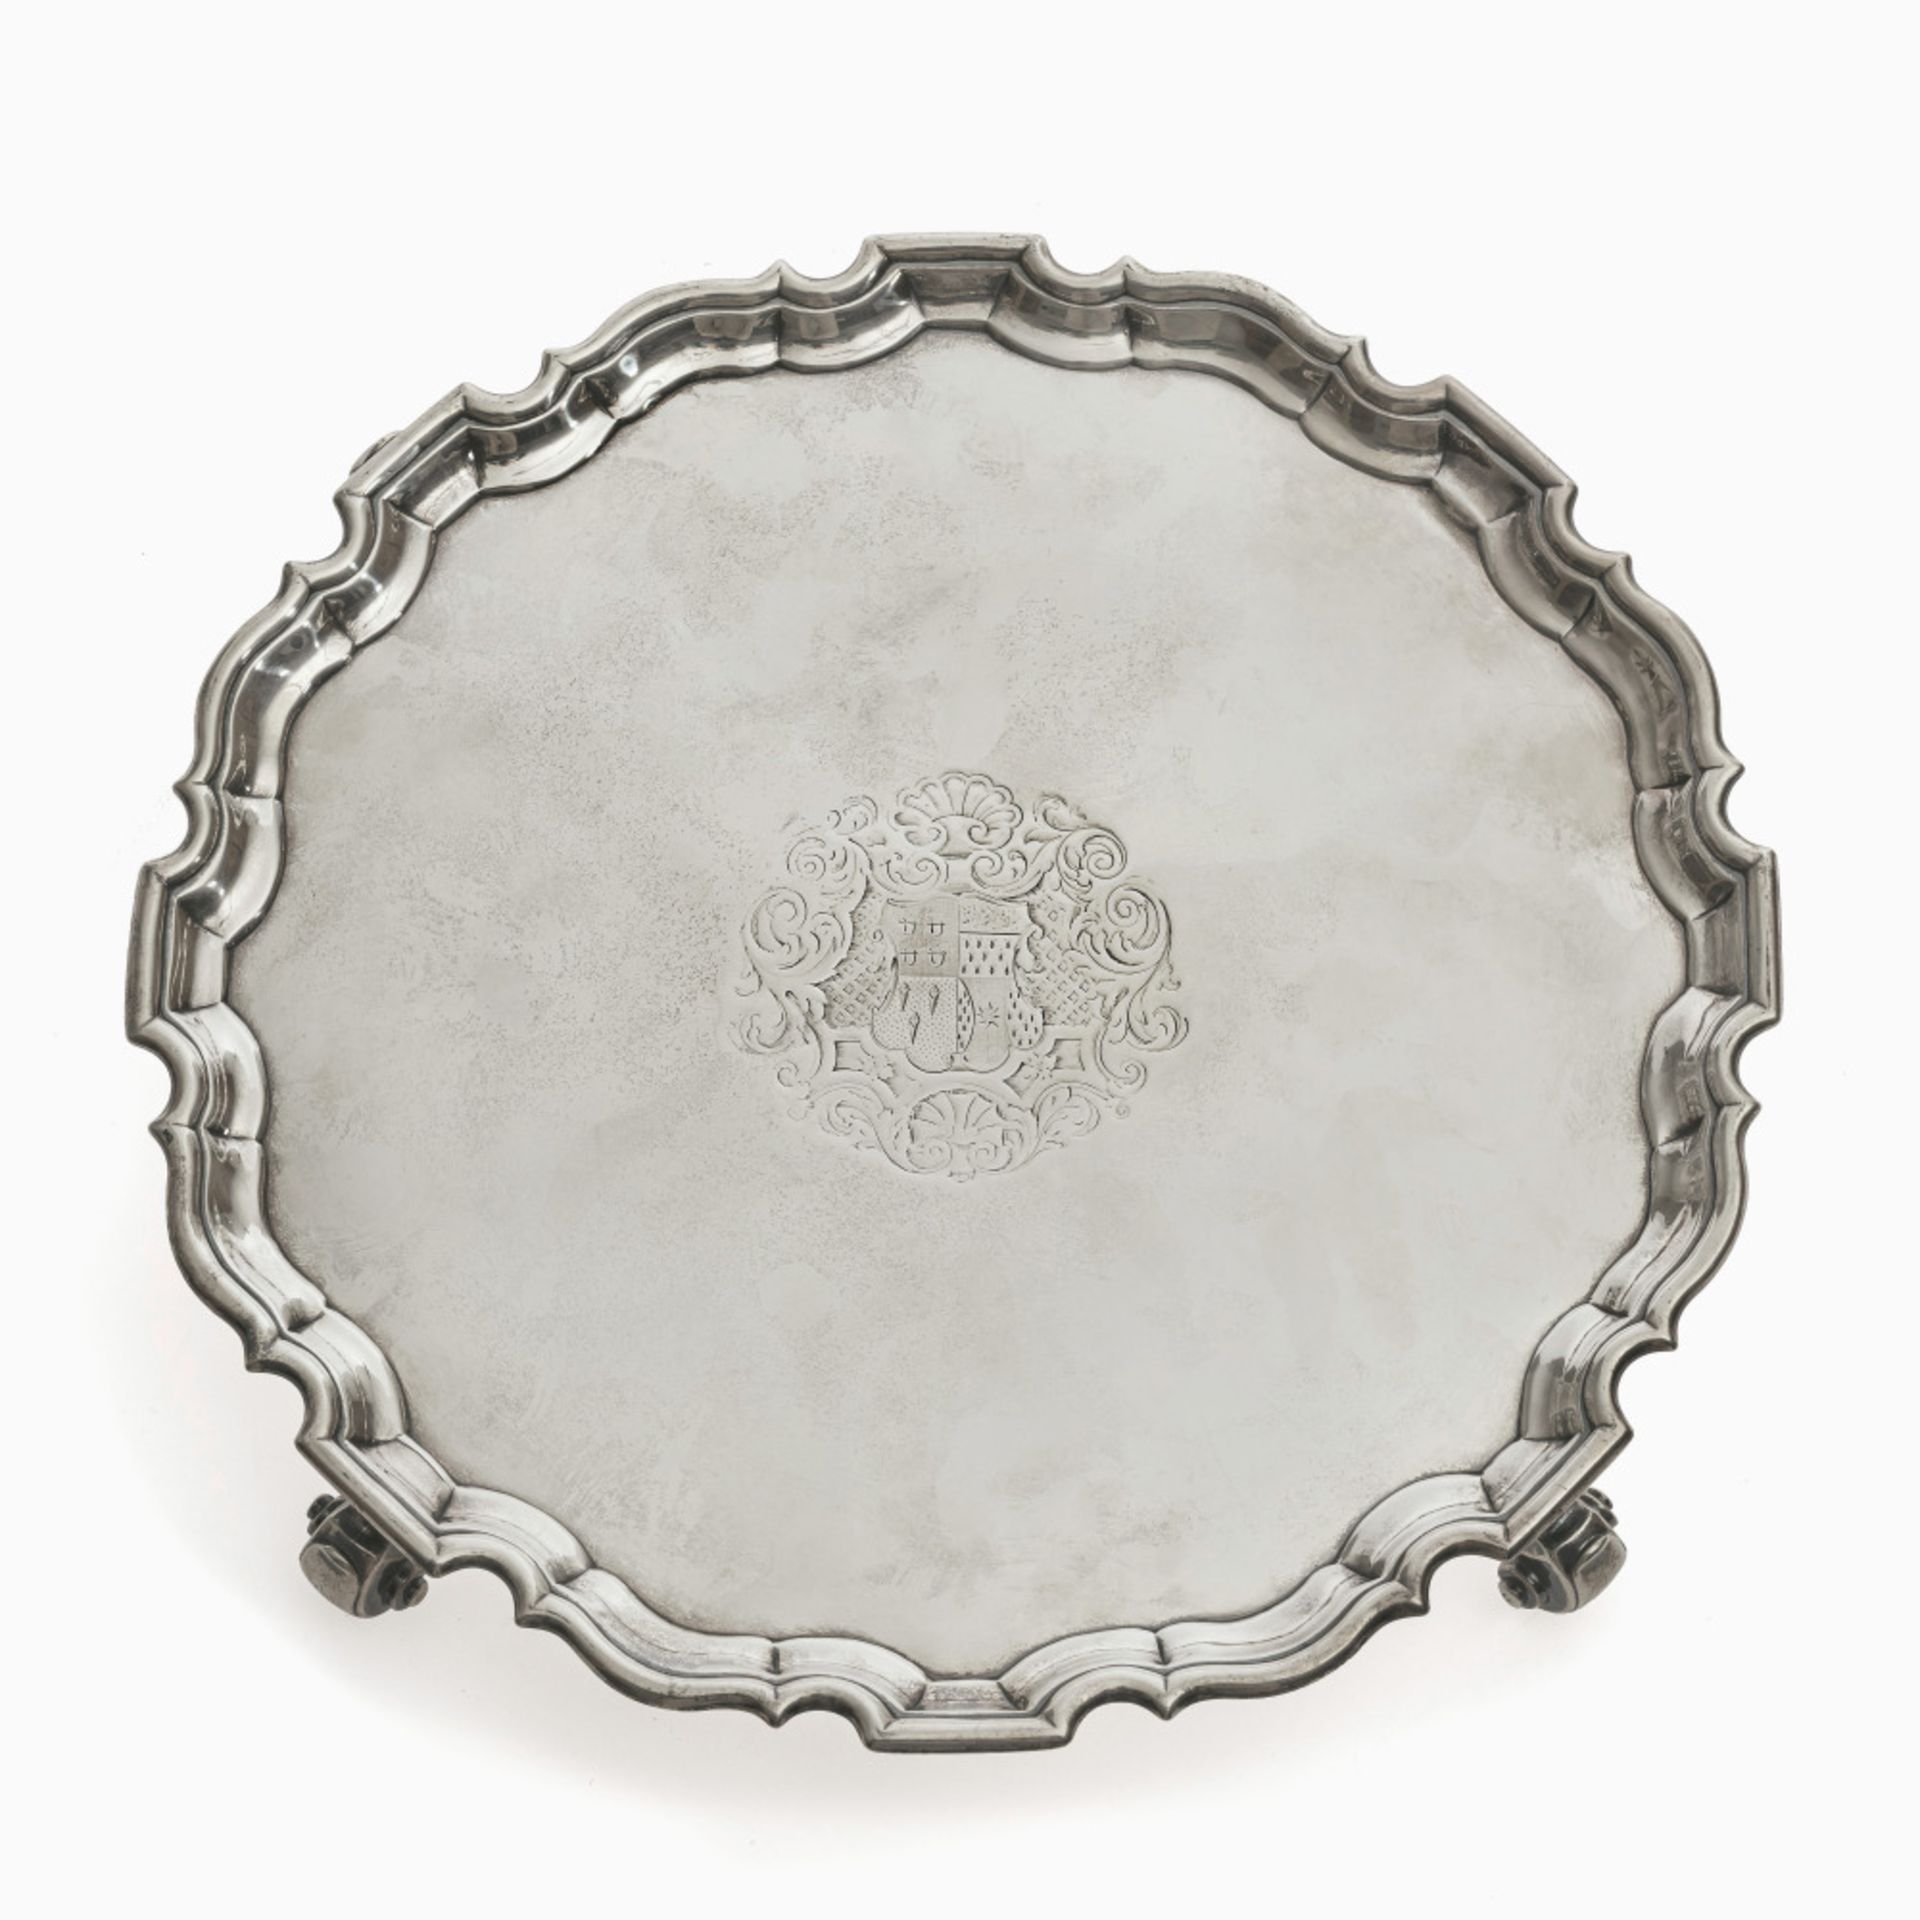 A tray (salver) - London, 1736/1737, Dennis Langton